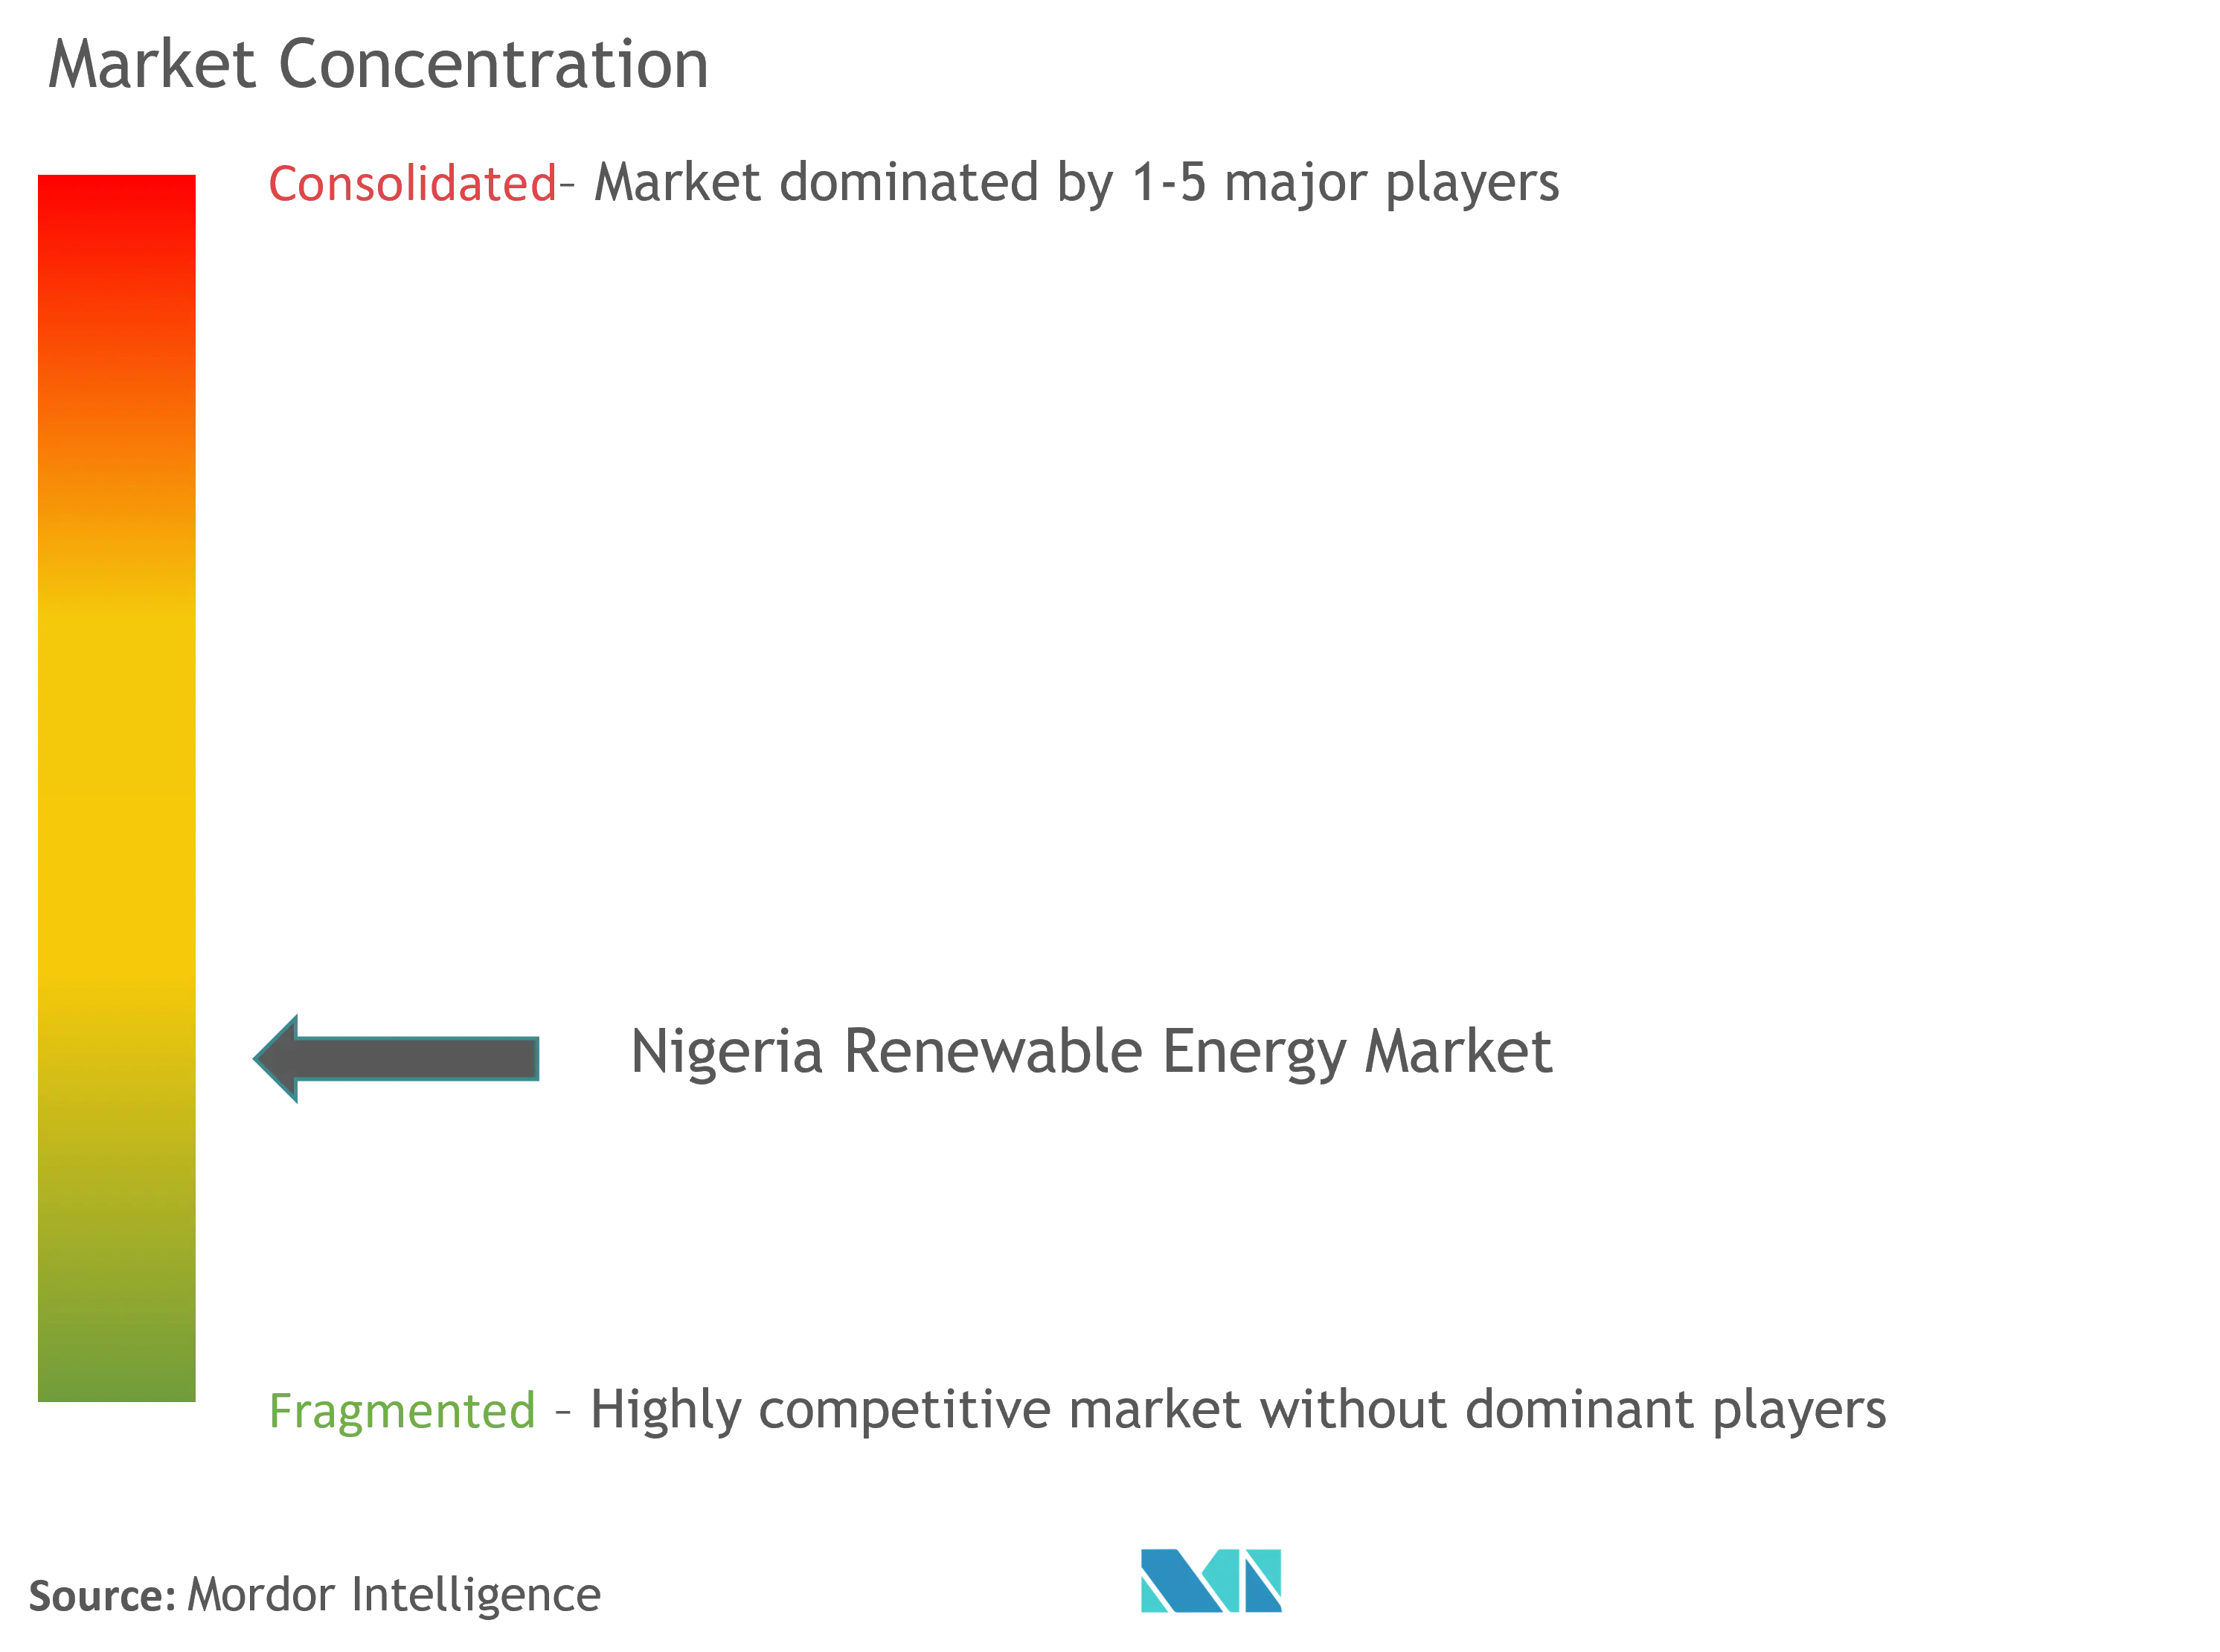 ナイジェリア再生可能エネルギー市場集中度